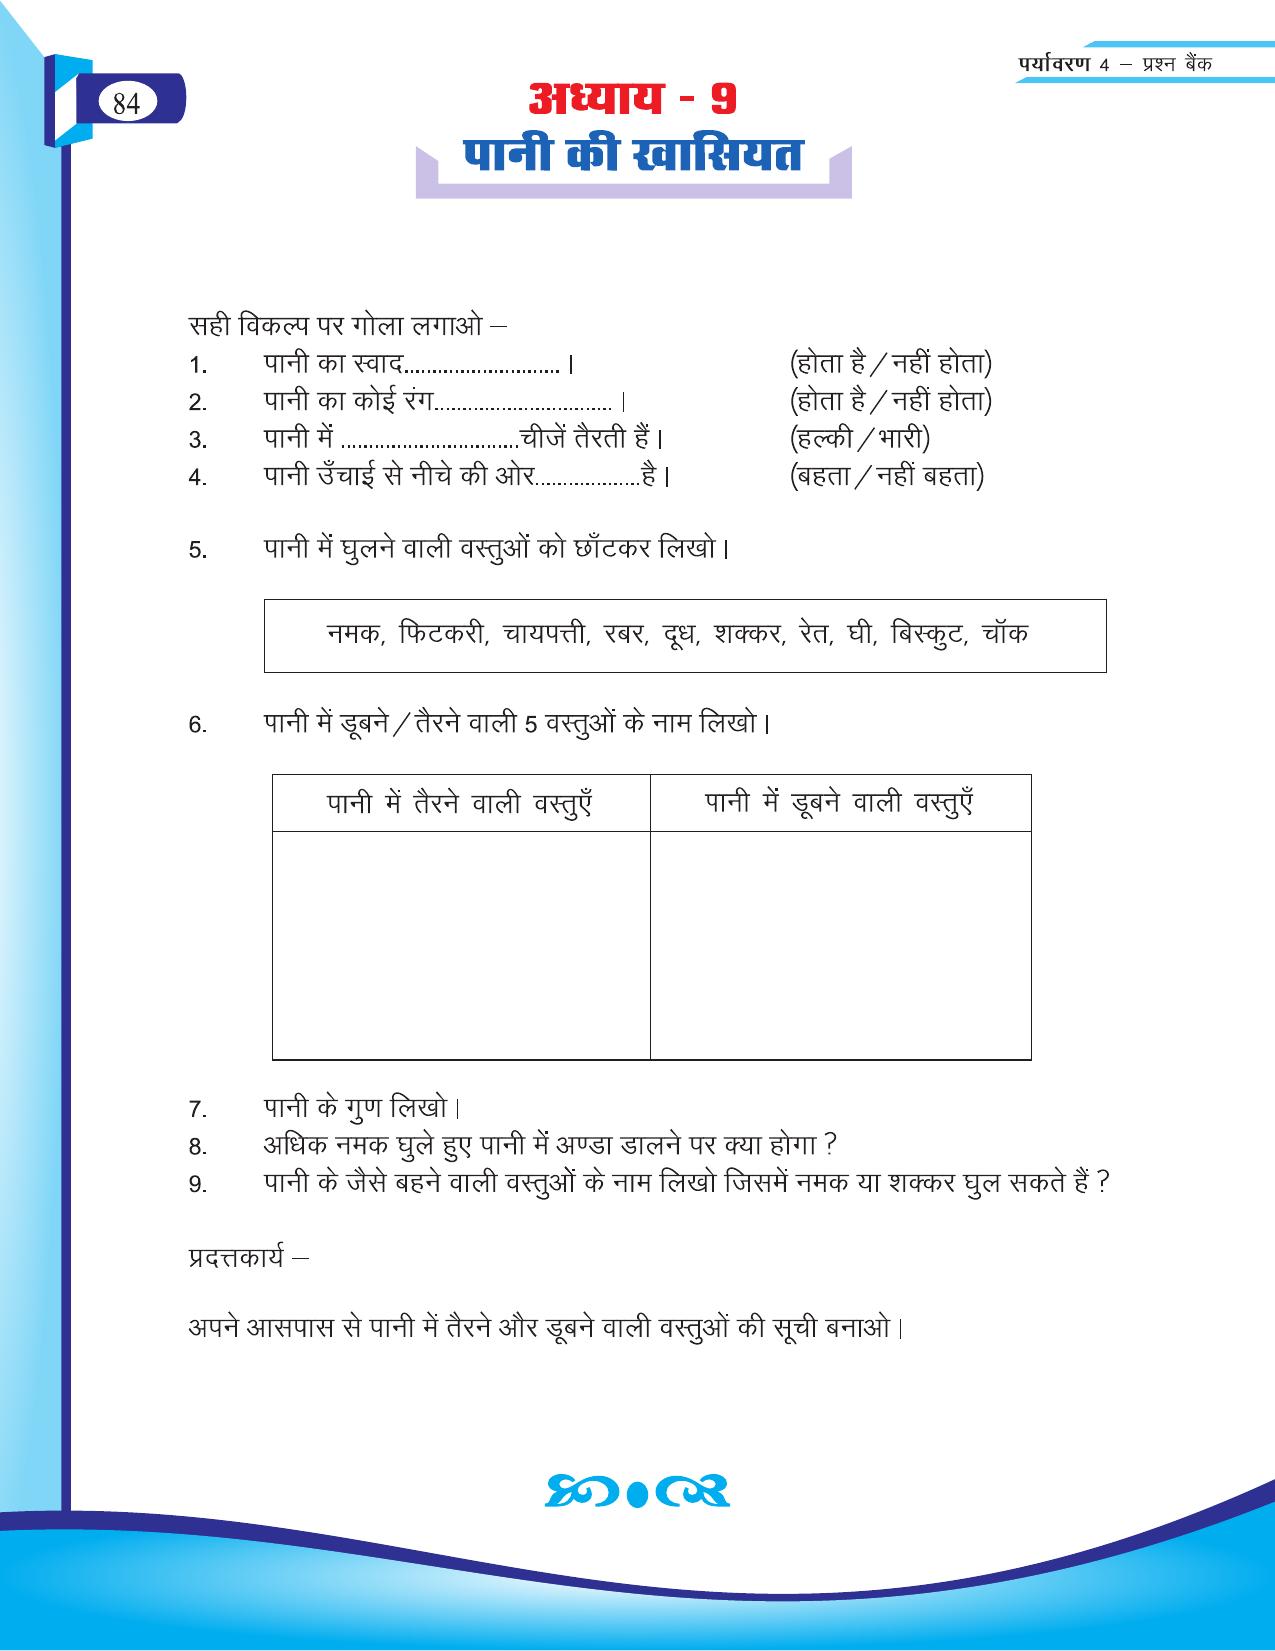 Chhattisgarh Board Class 4 EVS Question Bank 2015-16 - Page 13